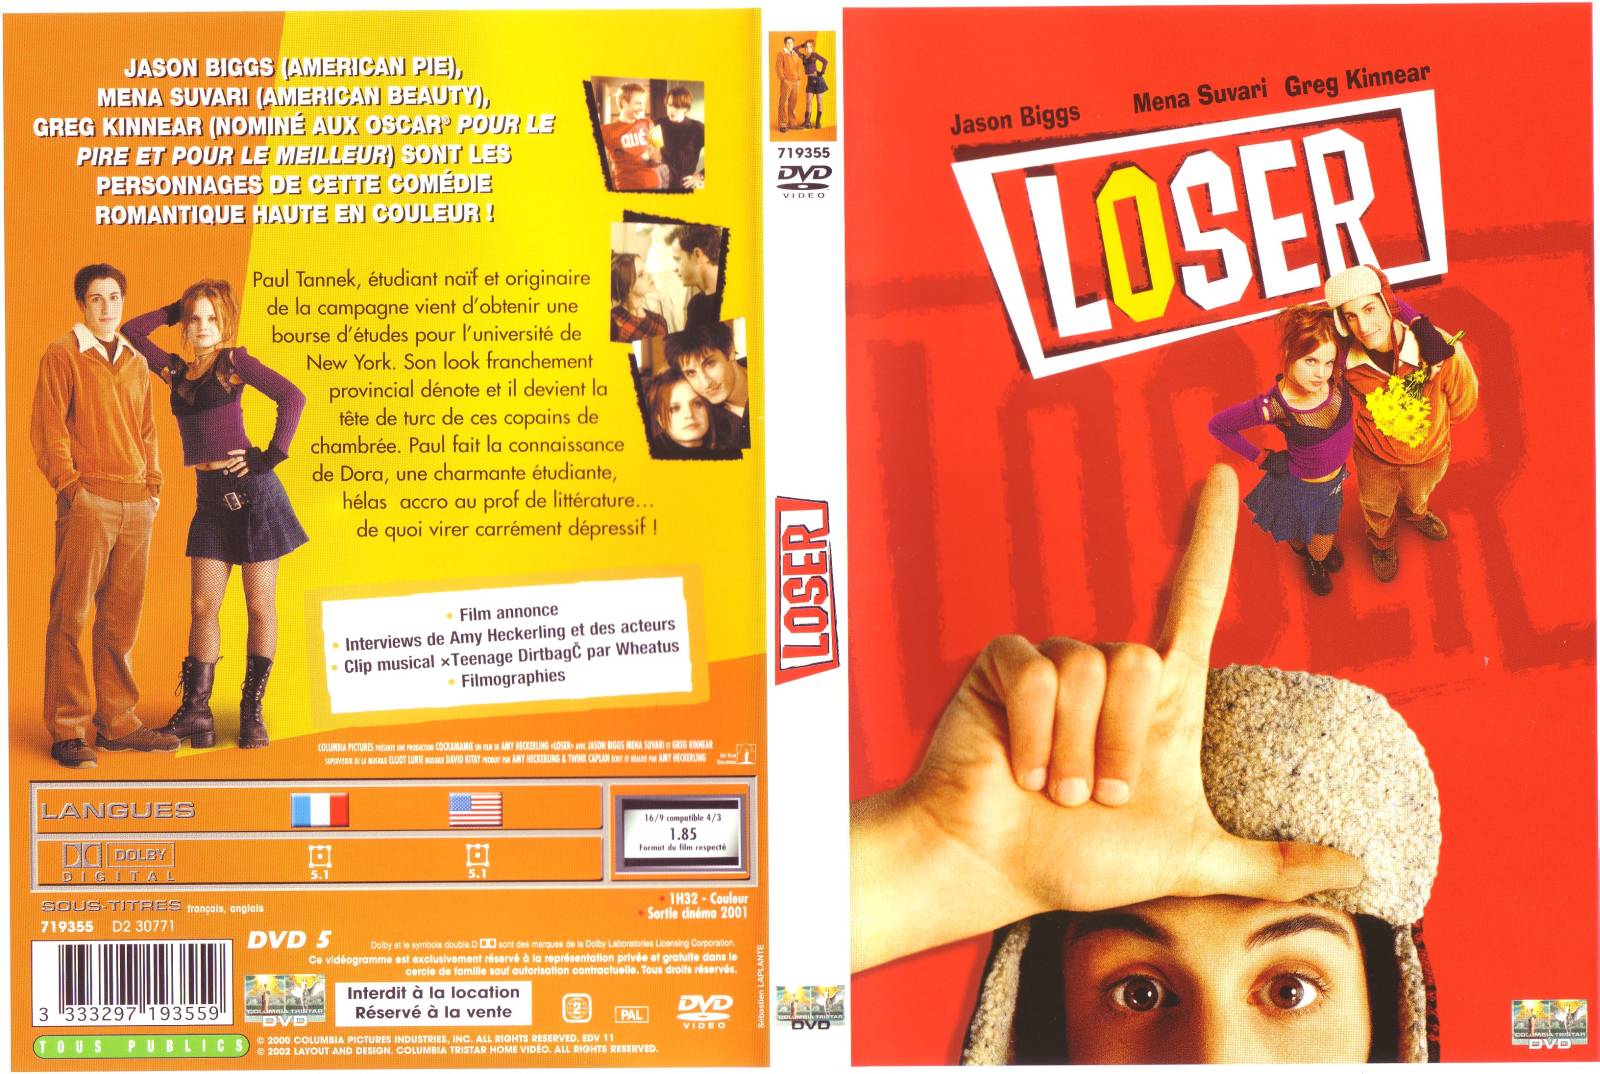 Jaquette DVD Loser v2